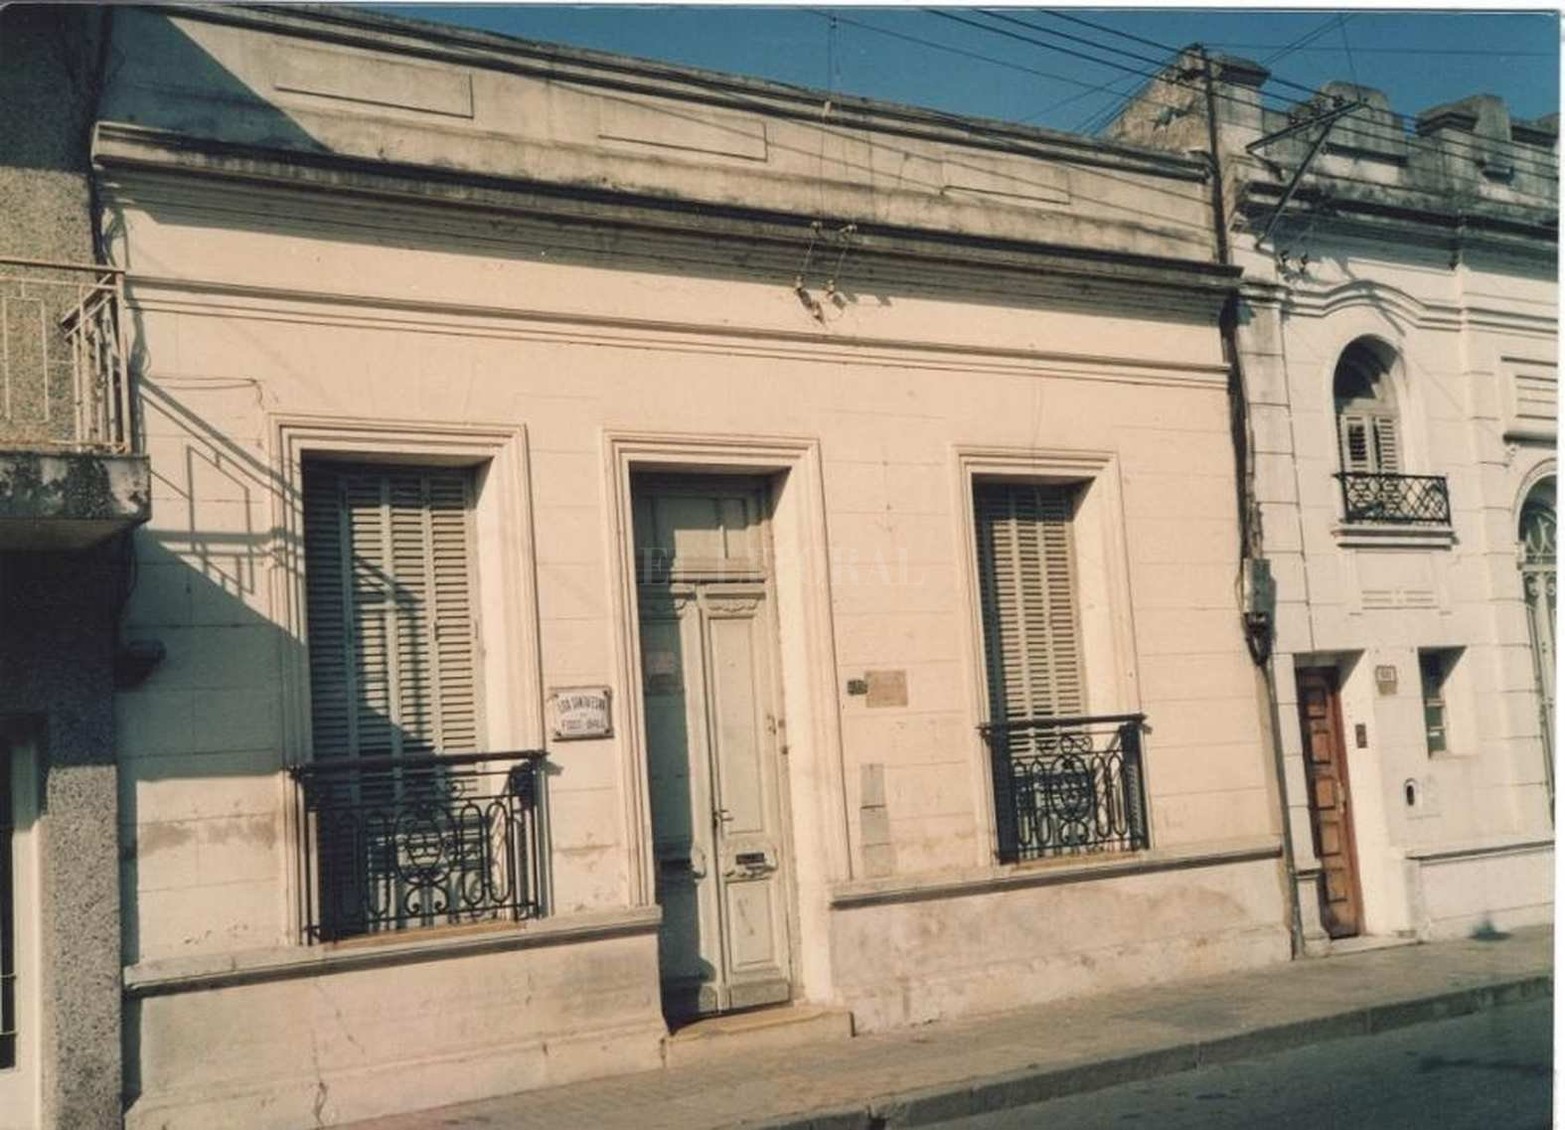 La Liga Santafesina de Fútbol cumplió 90 años de rica historia. La sede de Corrientes 3049.